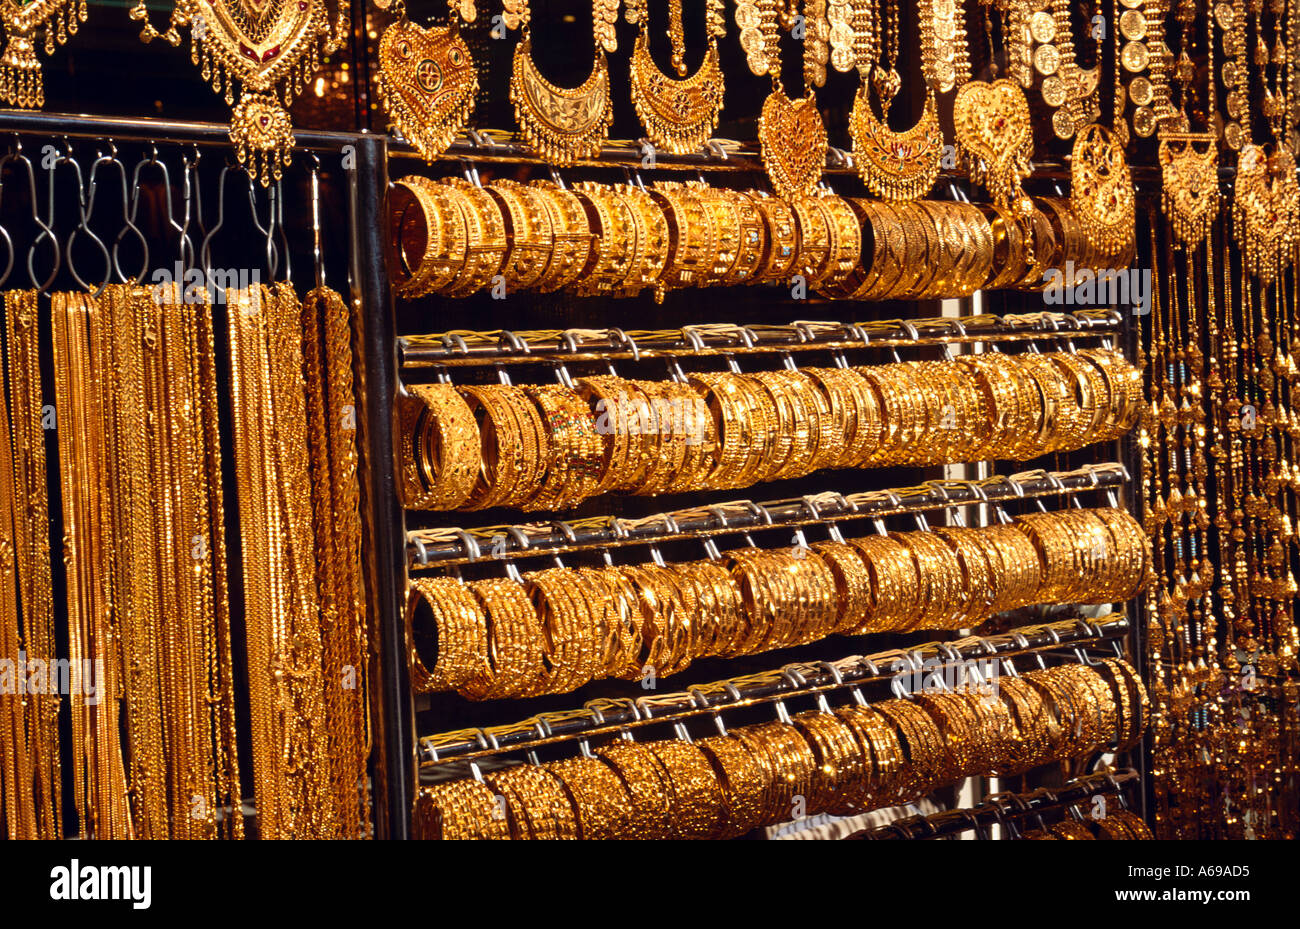 Juwelier Schaufenster Gold Souk Dubai Vereinigte Arabische Emirate  Stockfotografie - Alamy